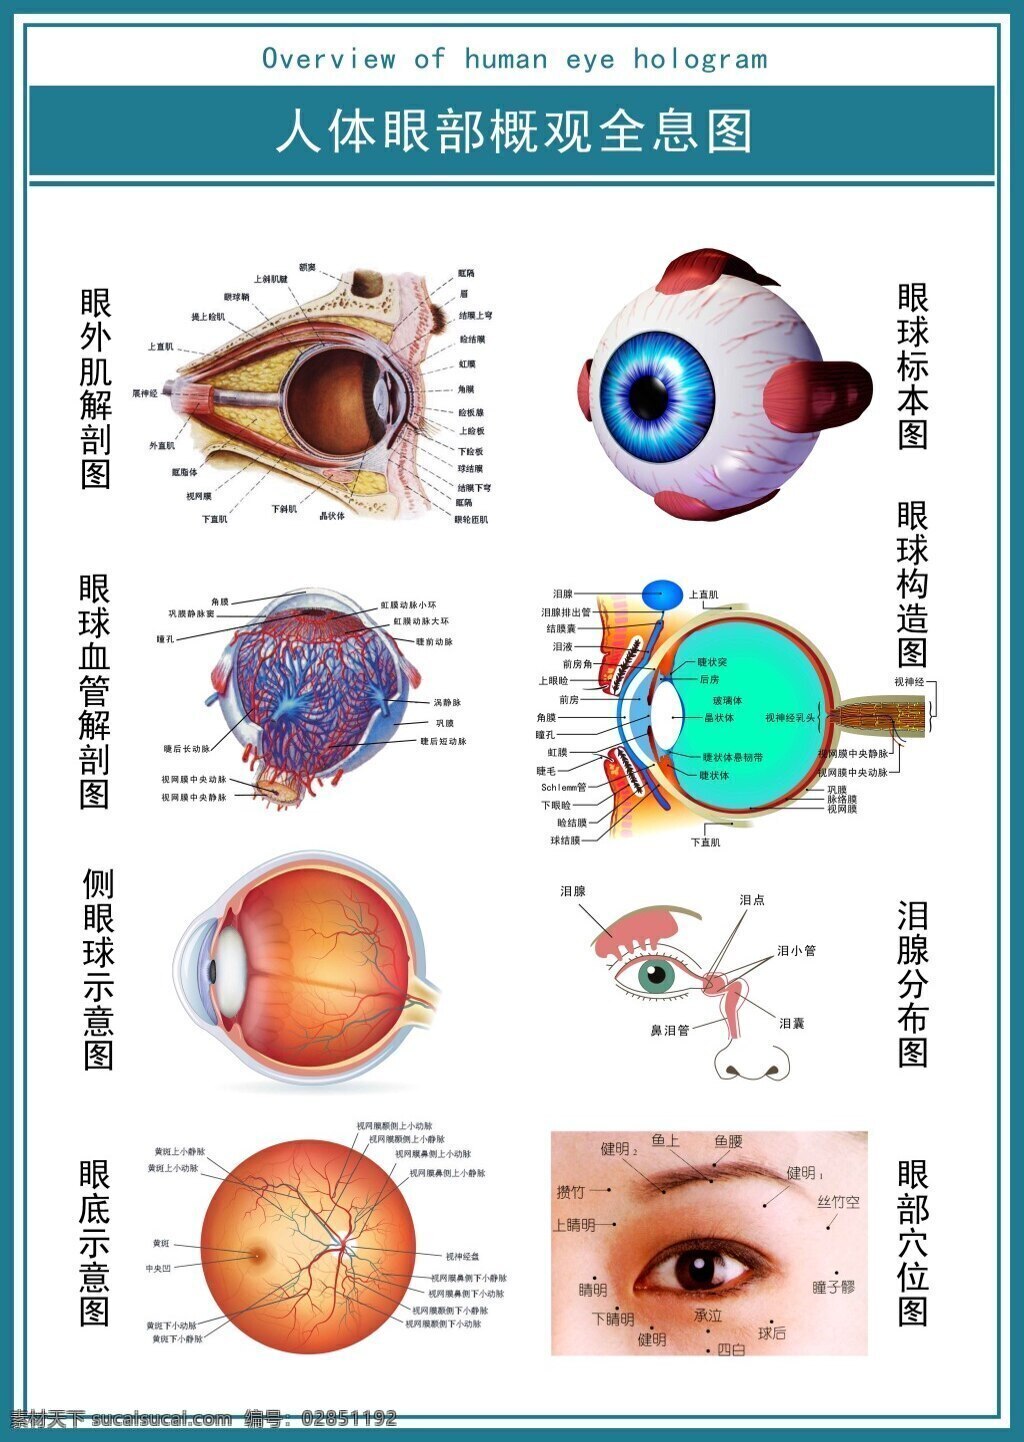 现代 医学 展板 人体 眼部 概观 全息 图示 意图 超 清 眼 眼球 眼睛 超清图 白色